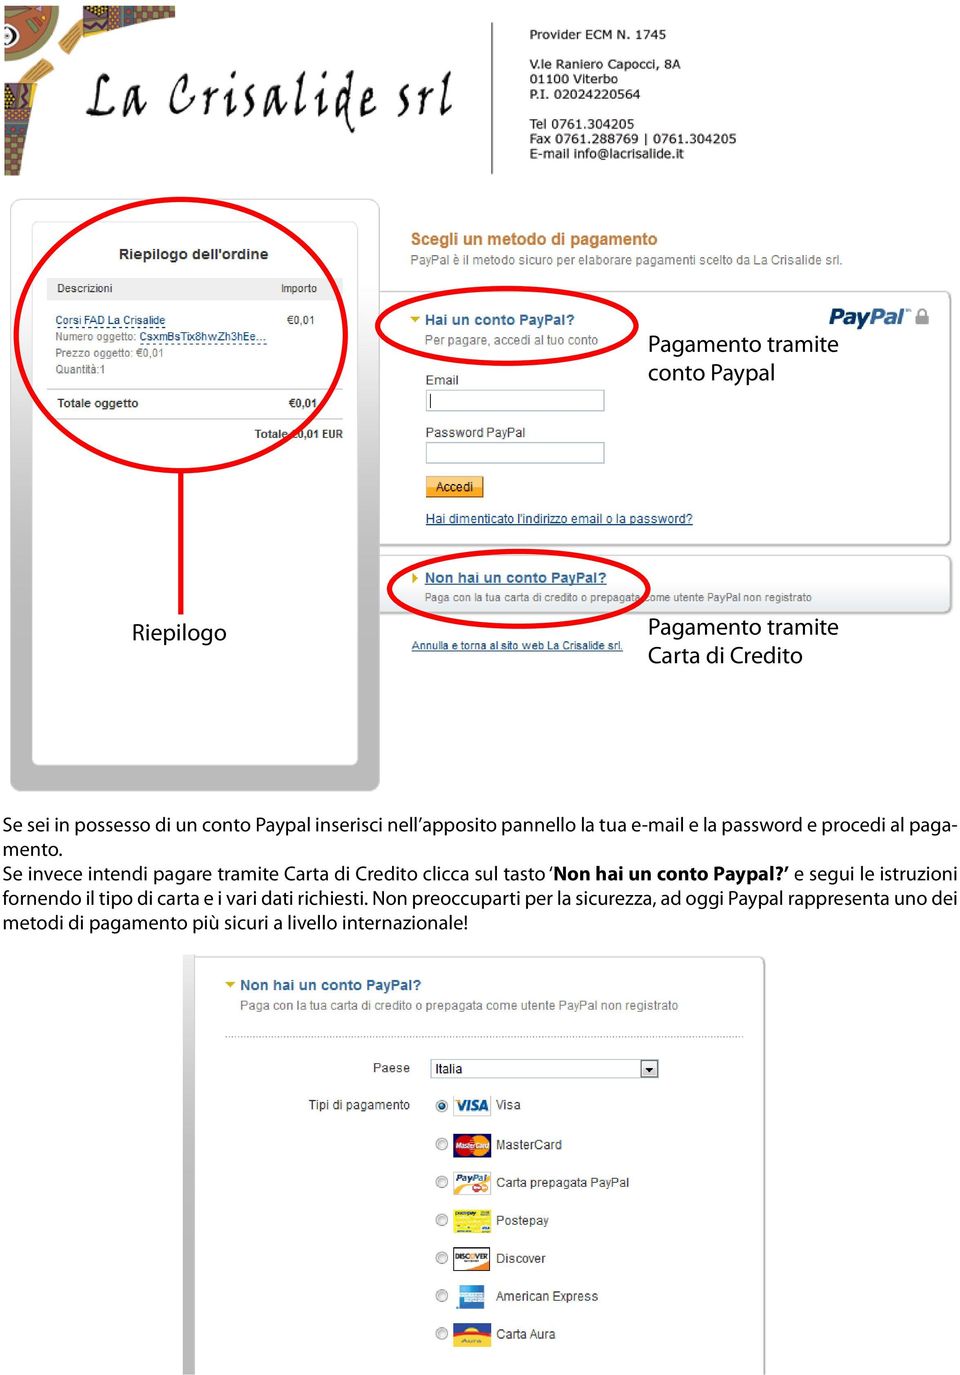 Se invece intendi pagare tramite Carta di Credito clicca sul tasto Non hai un conto Paypal?